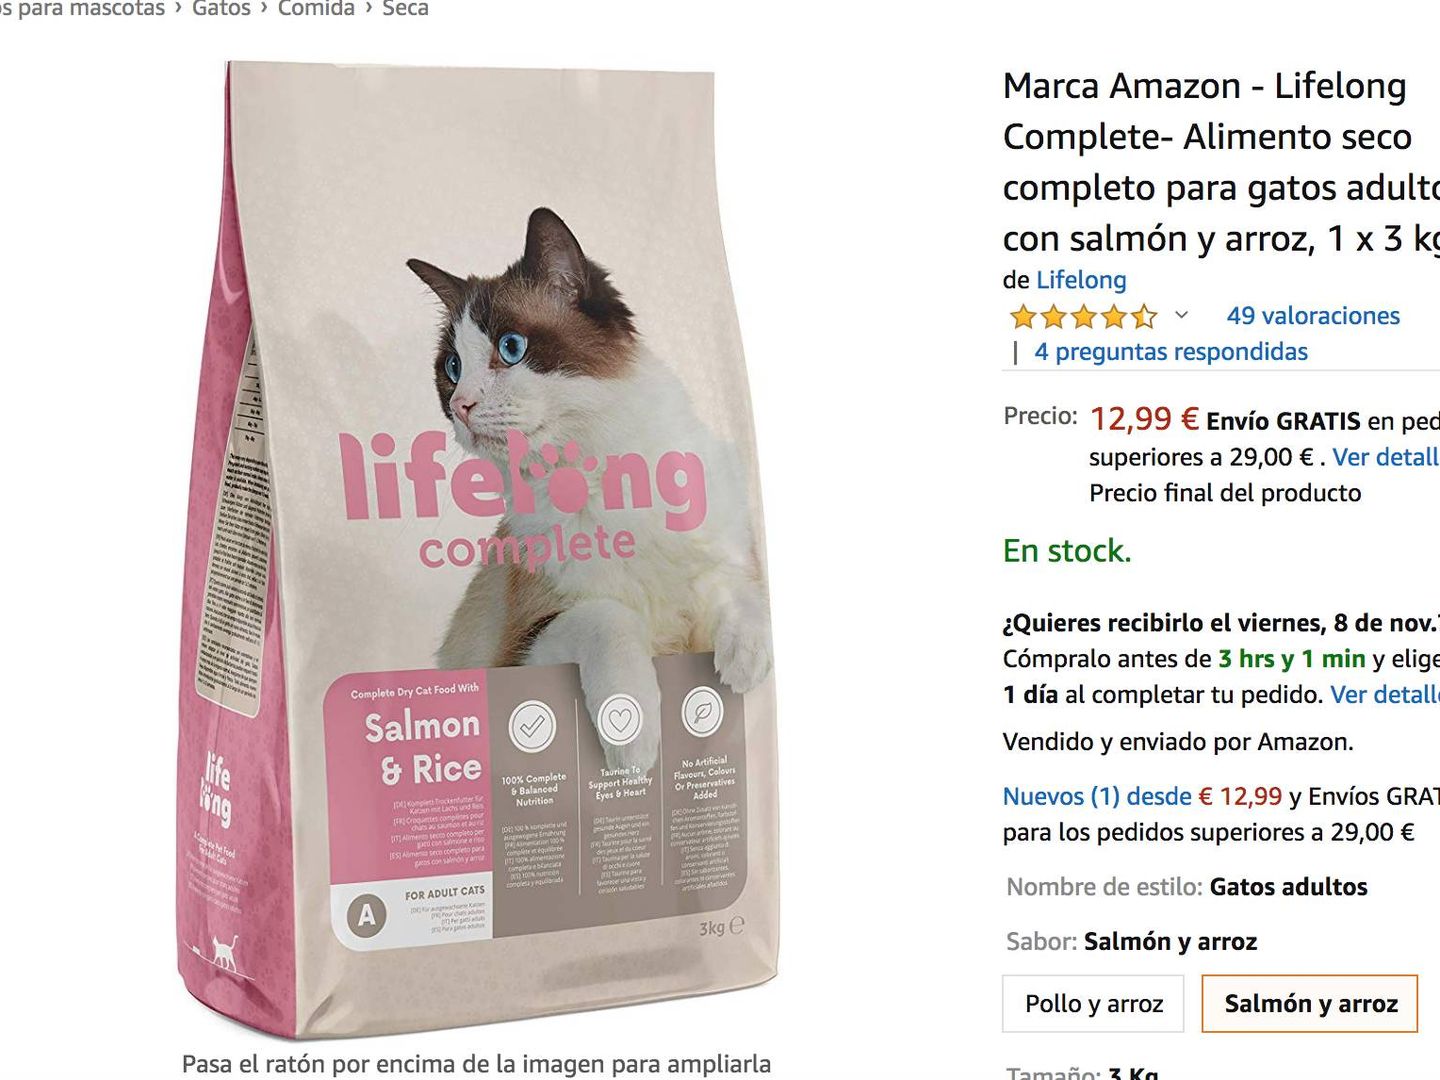 Comida seca para gatos de la marca de Amazon Lifelong, fabricada por la aragonesa Bynsa.